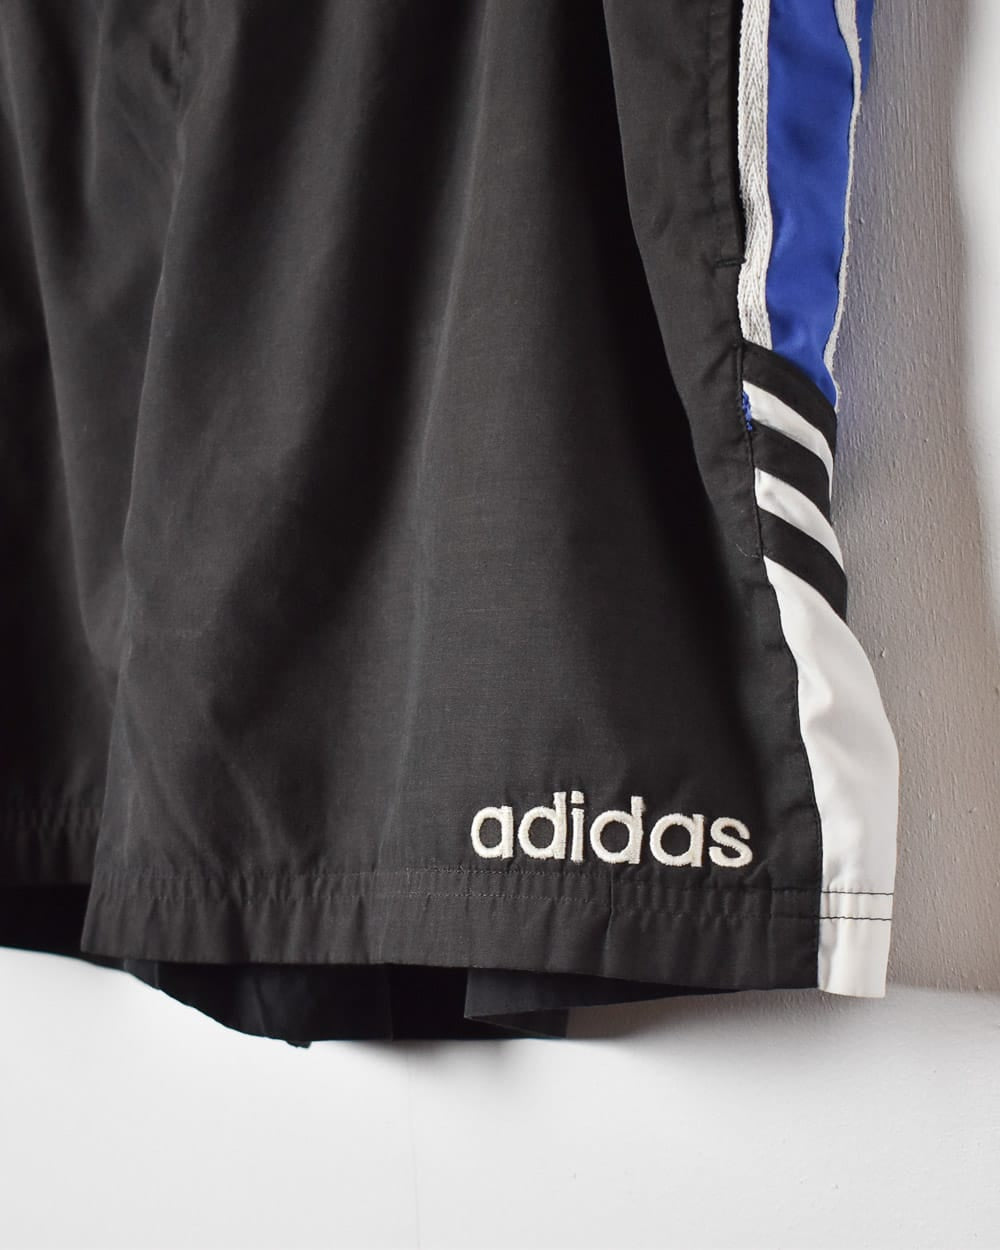 Black Adidas Shorts - Large